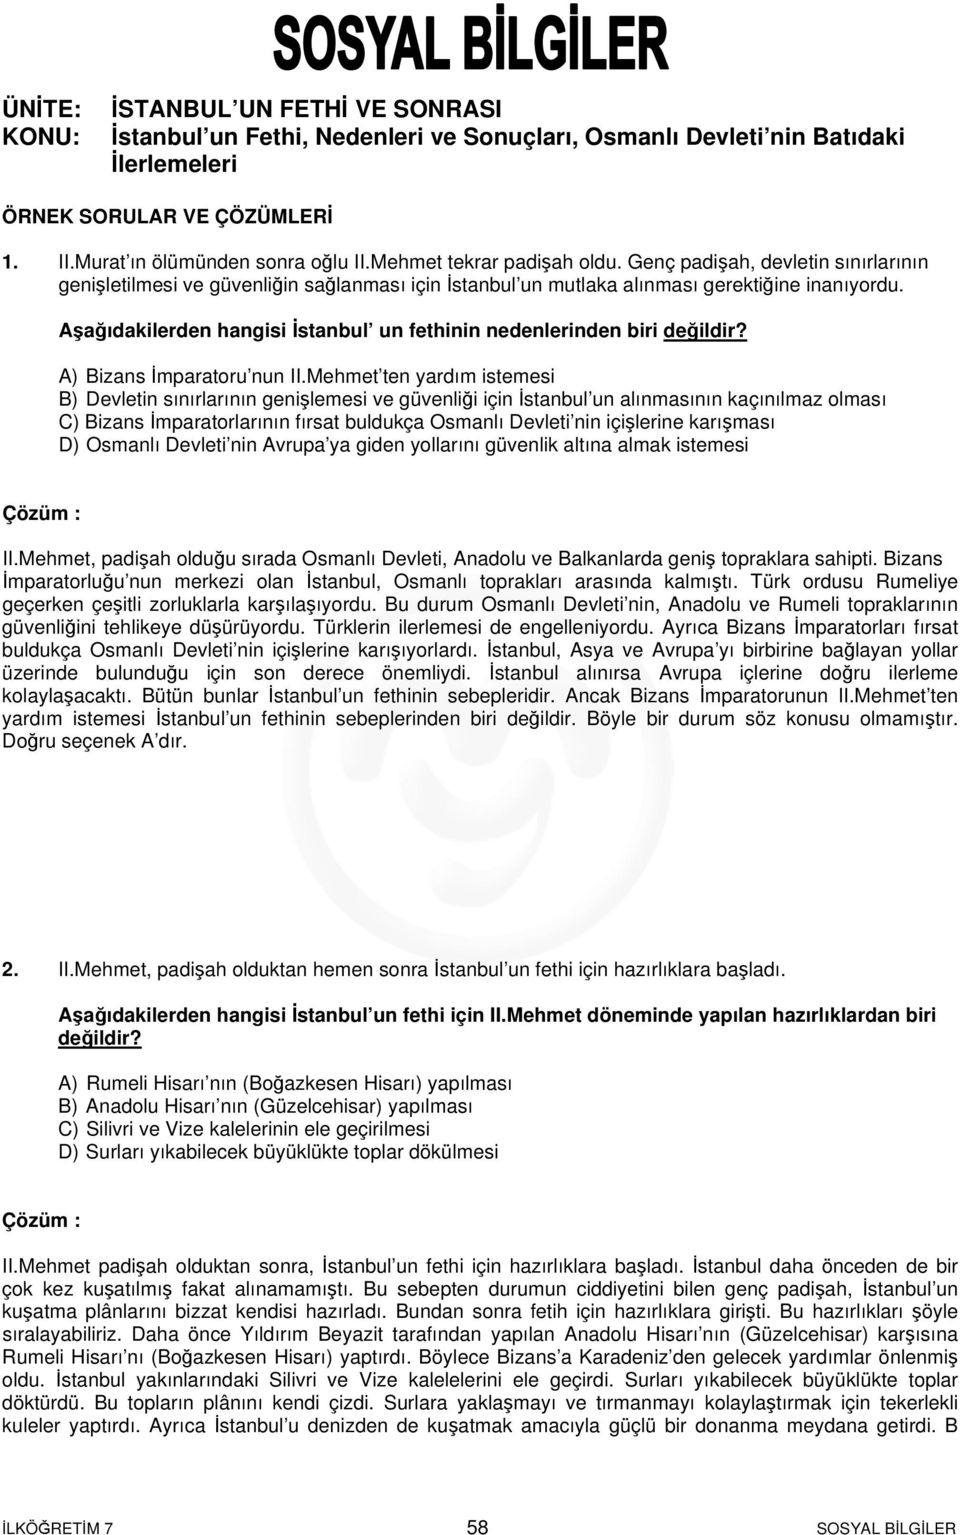 istanbul un fethi ve sonrasi istanbul un fethi nedenleri ve sonuclari osmanli devleti nin batidaki ilerlemeleri pdf ucretsiz indirin